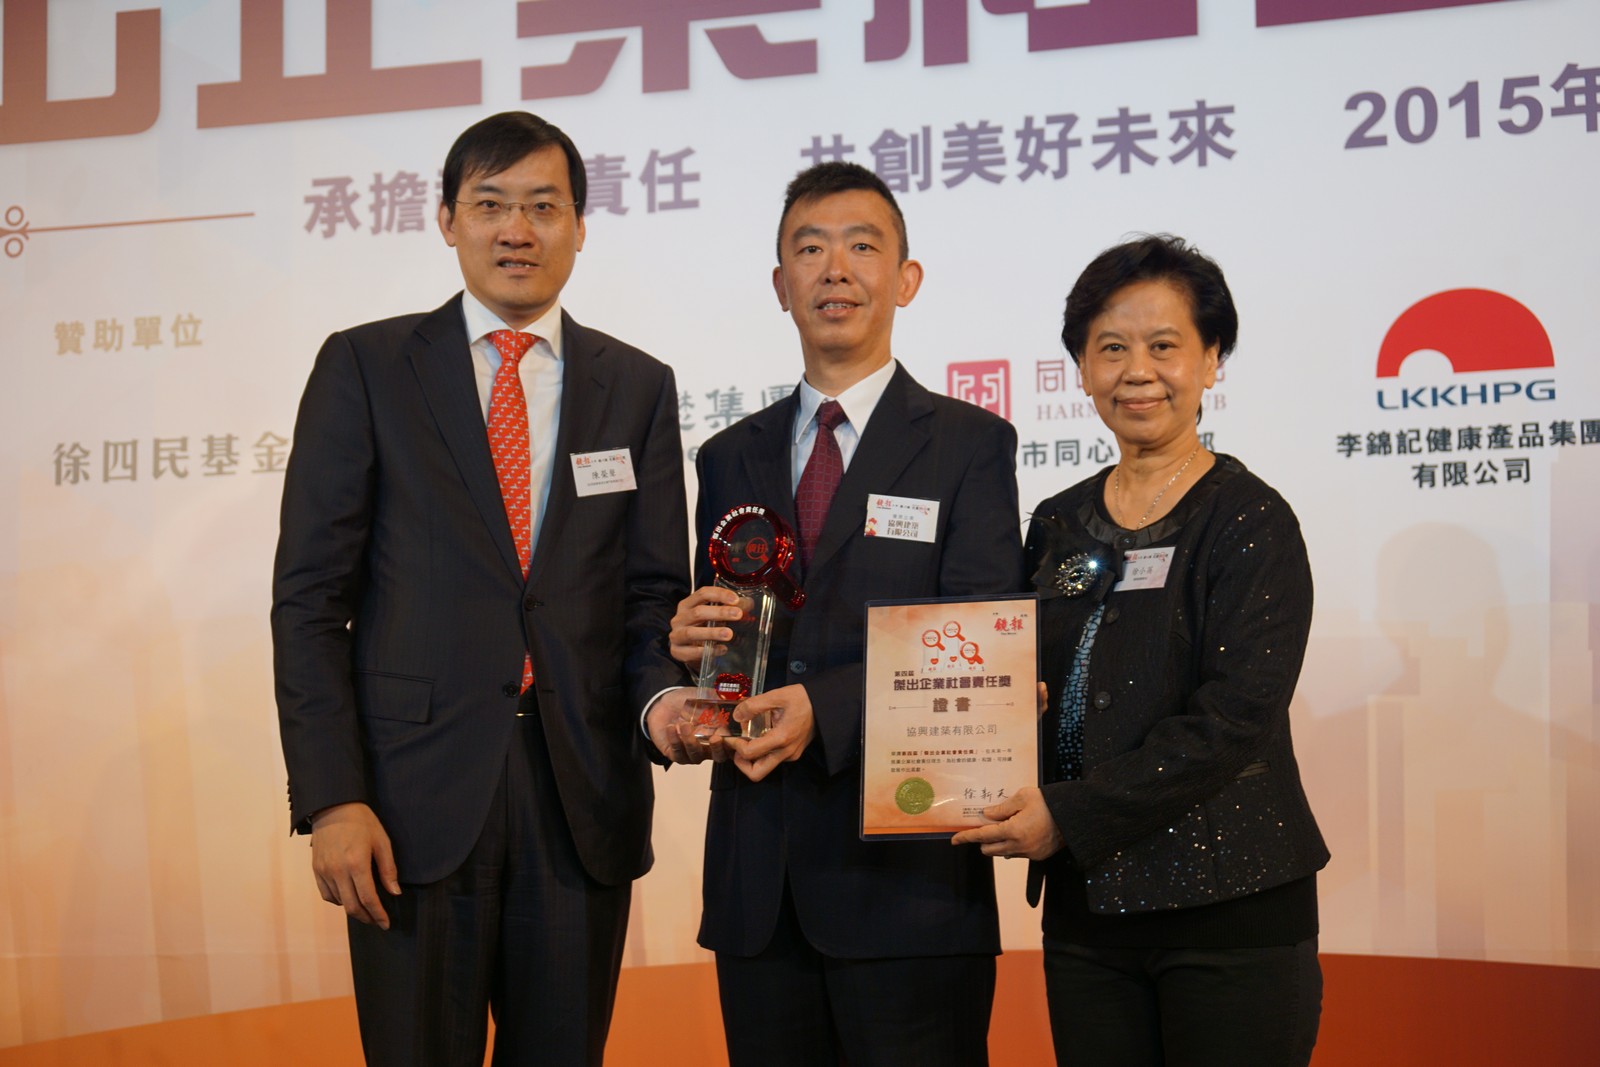 企业社会责任委员会主席胡劲恒先生（中）代表公司领取奖项